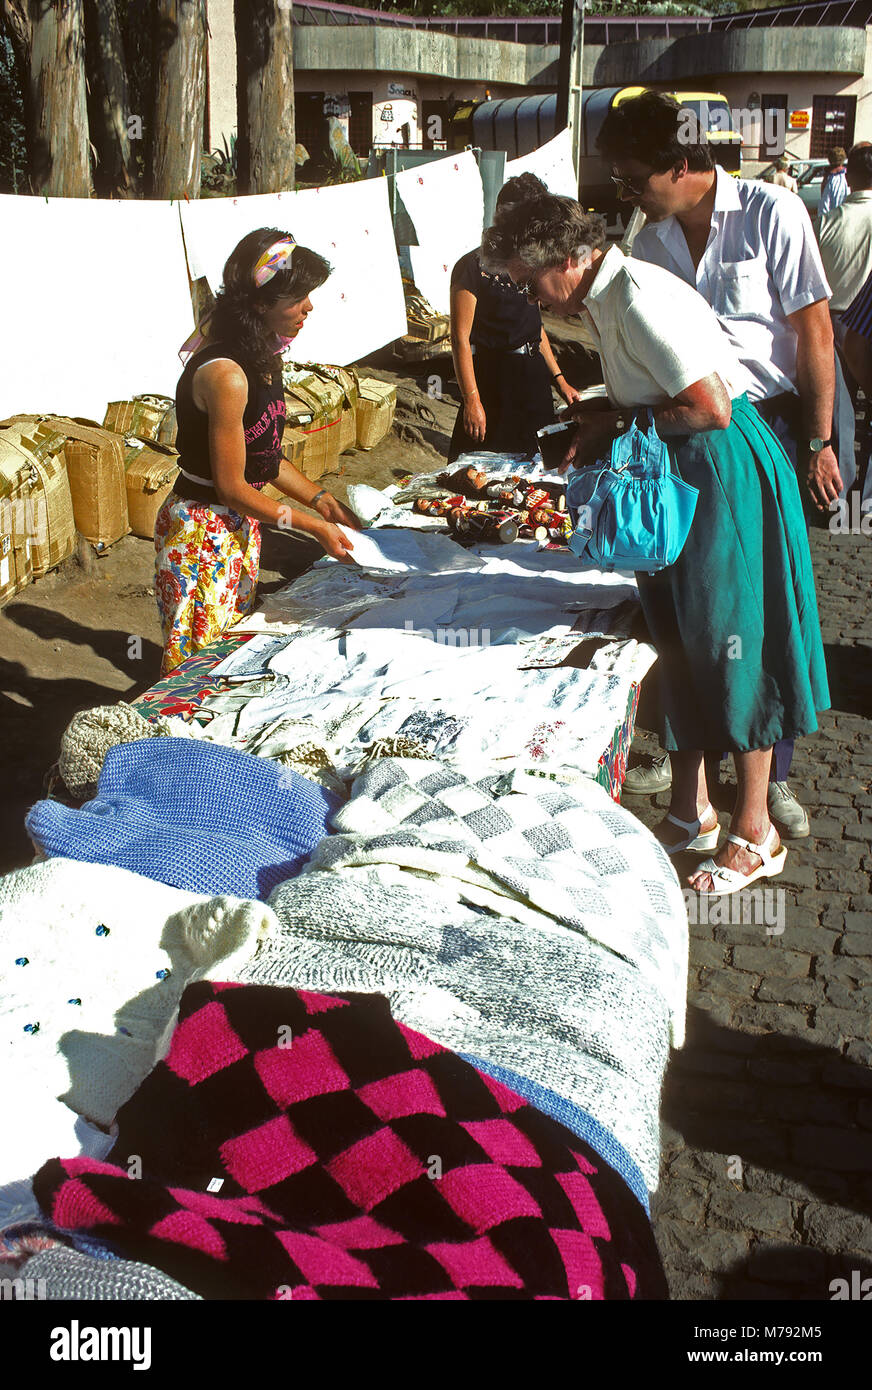 Ein Markt im Freien auf der Insel Madeira, Portugal Stockfoto